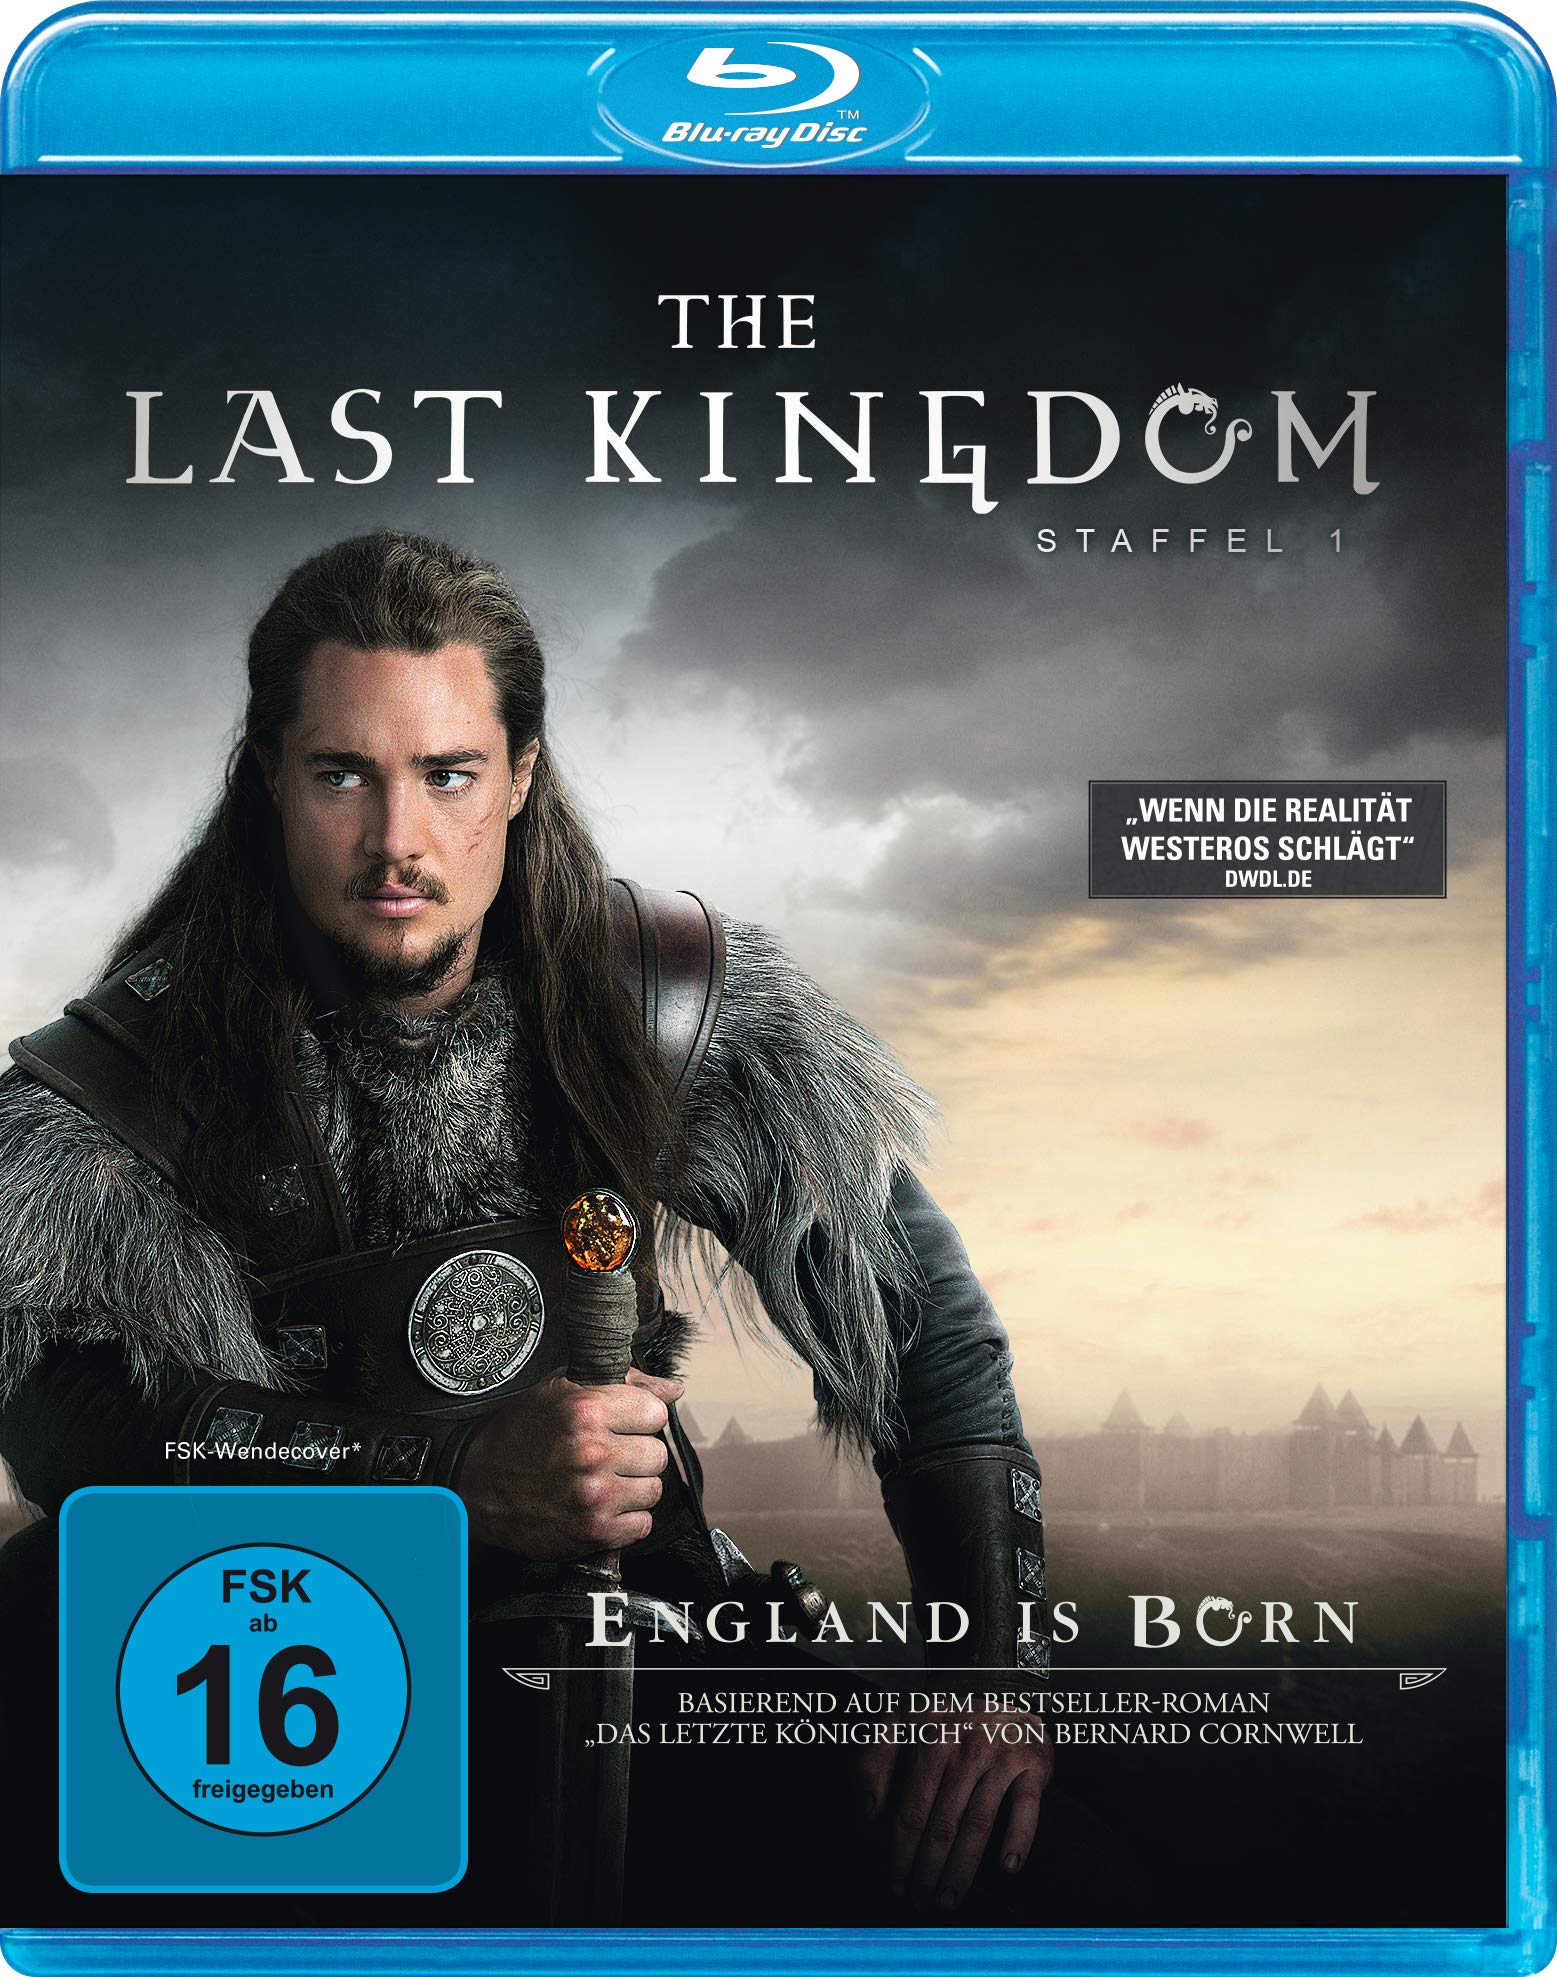 The Last Kingdom - Staffel 1 [Blu-ray]